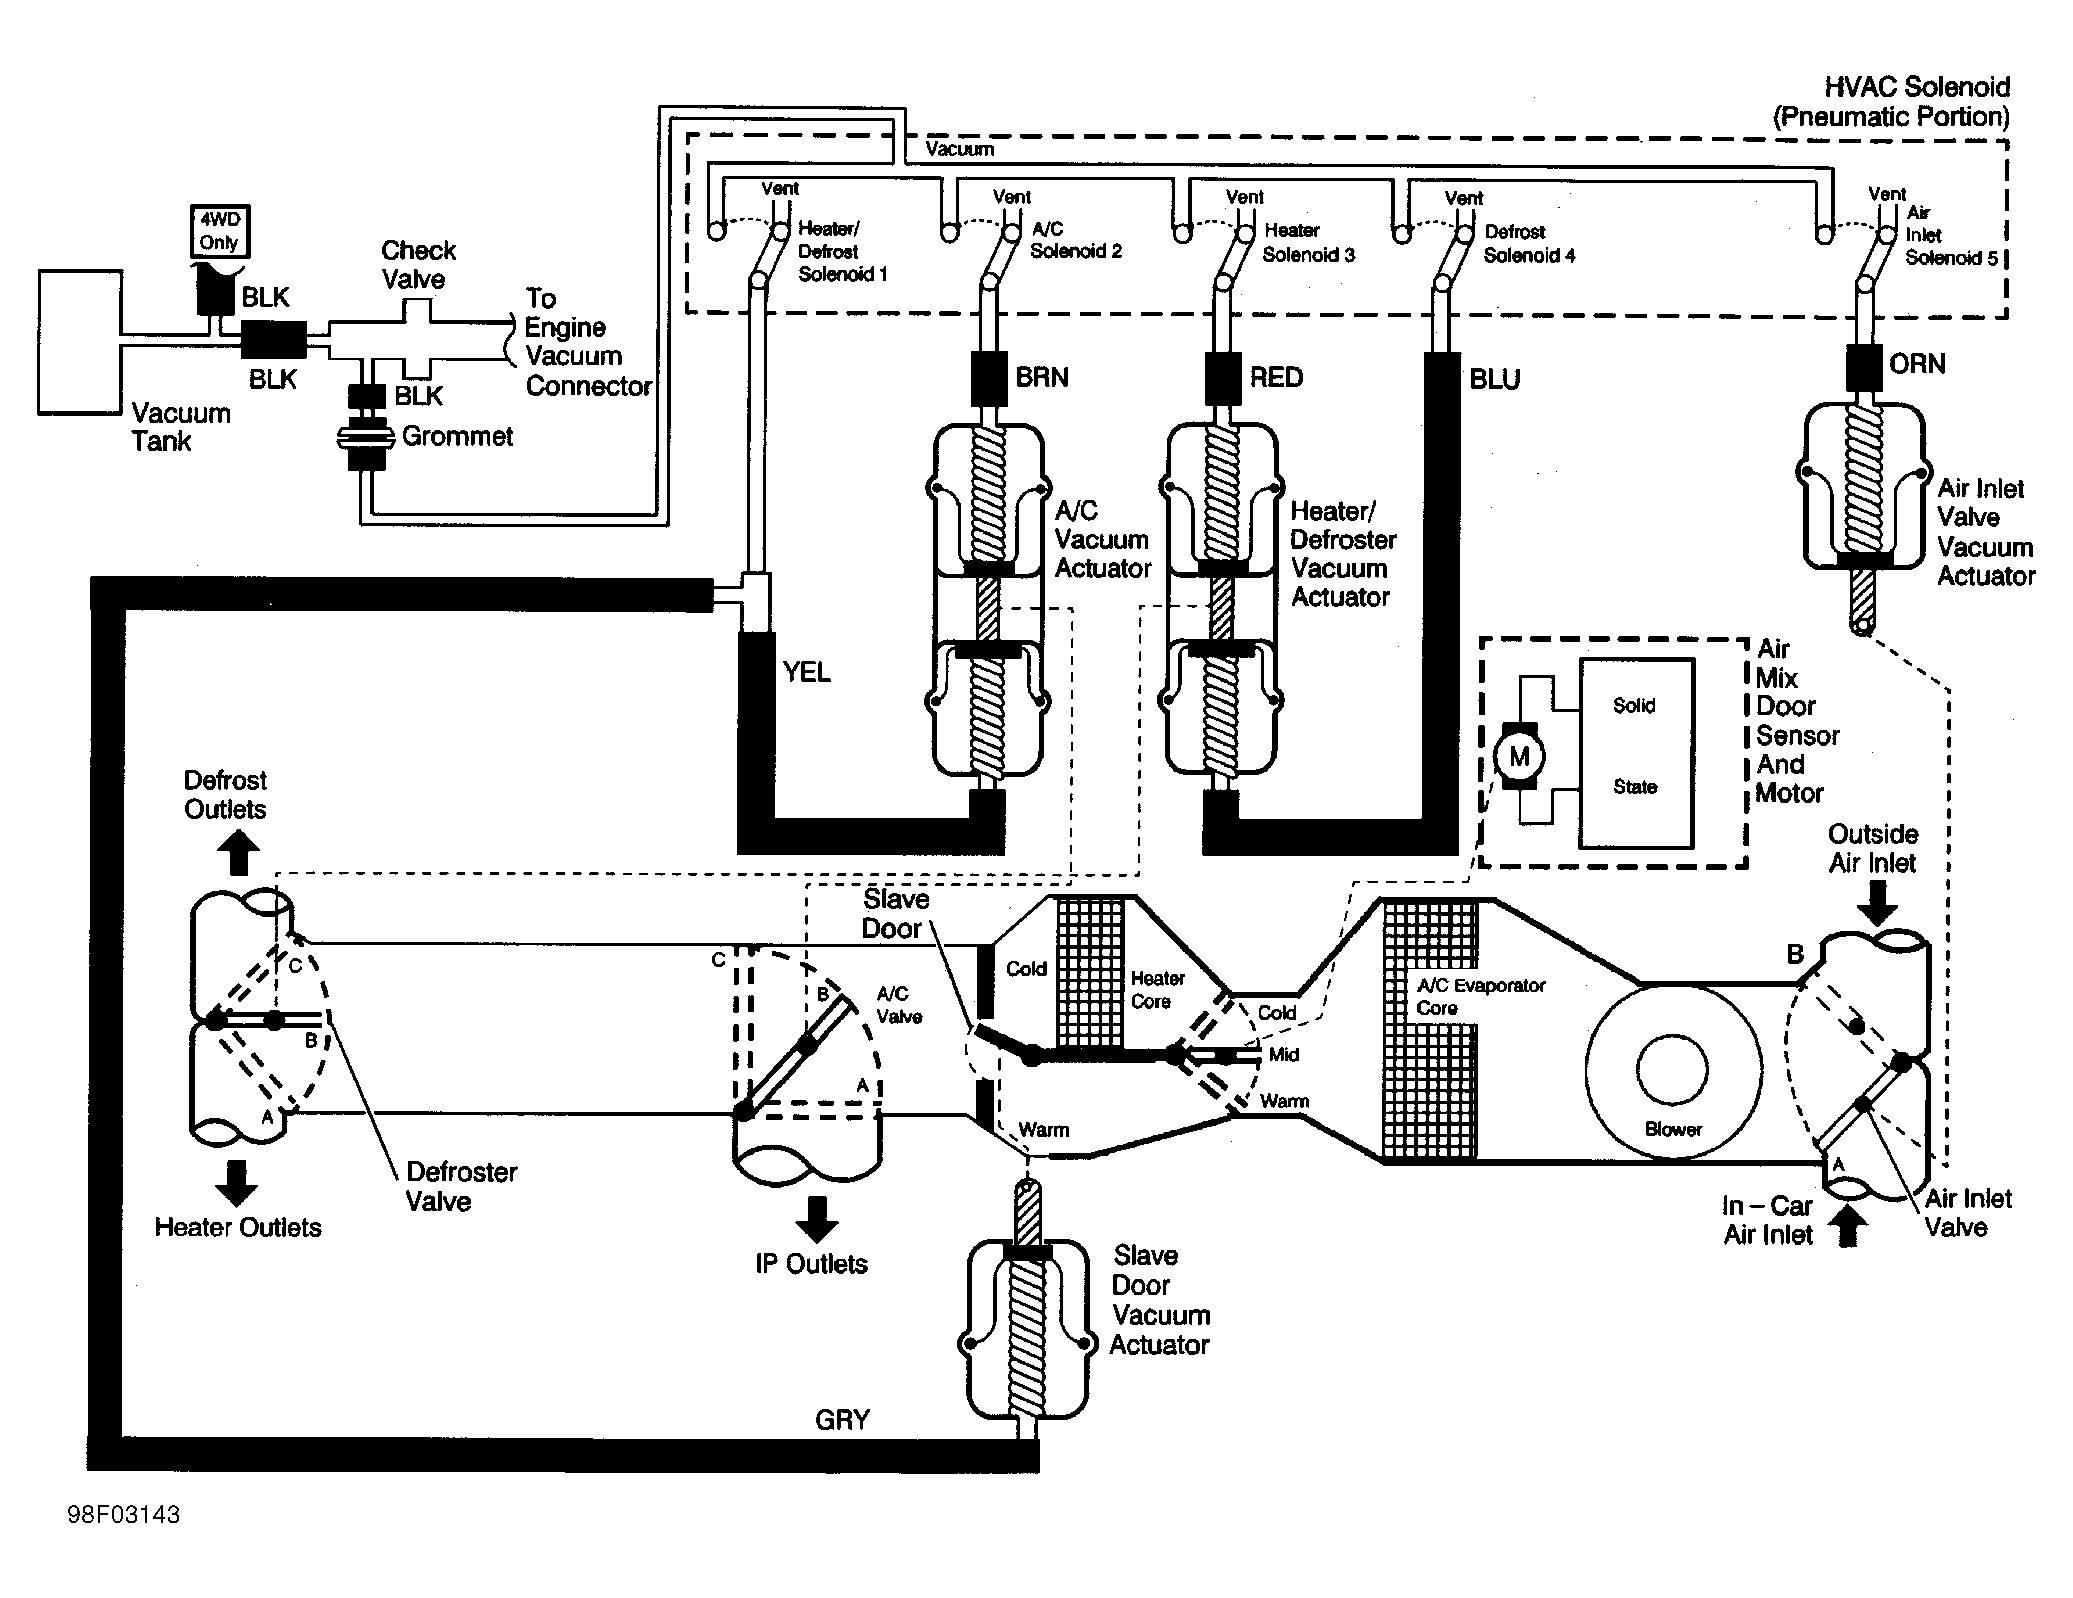 1999 Auto-HVAC vacuum schematic needed - Blazer Forum ... 04 chevy wiring diagram hvac 